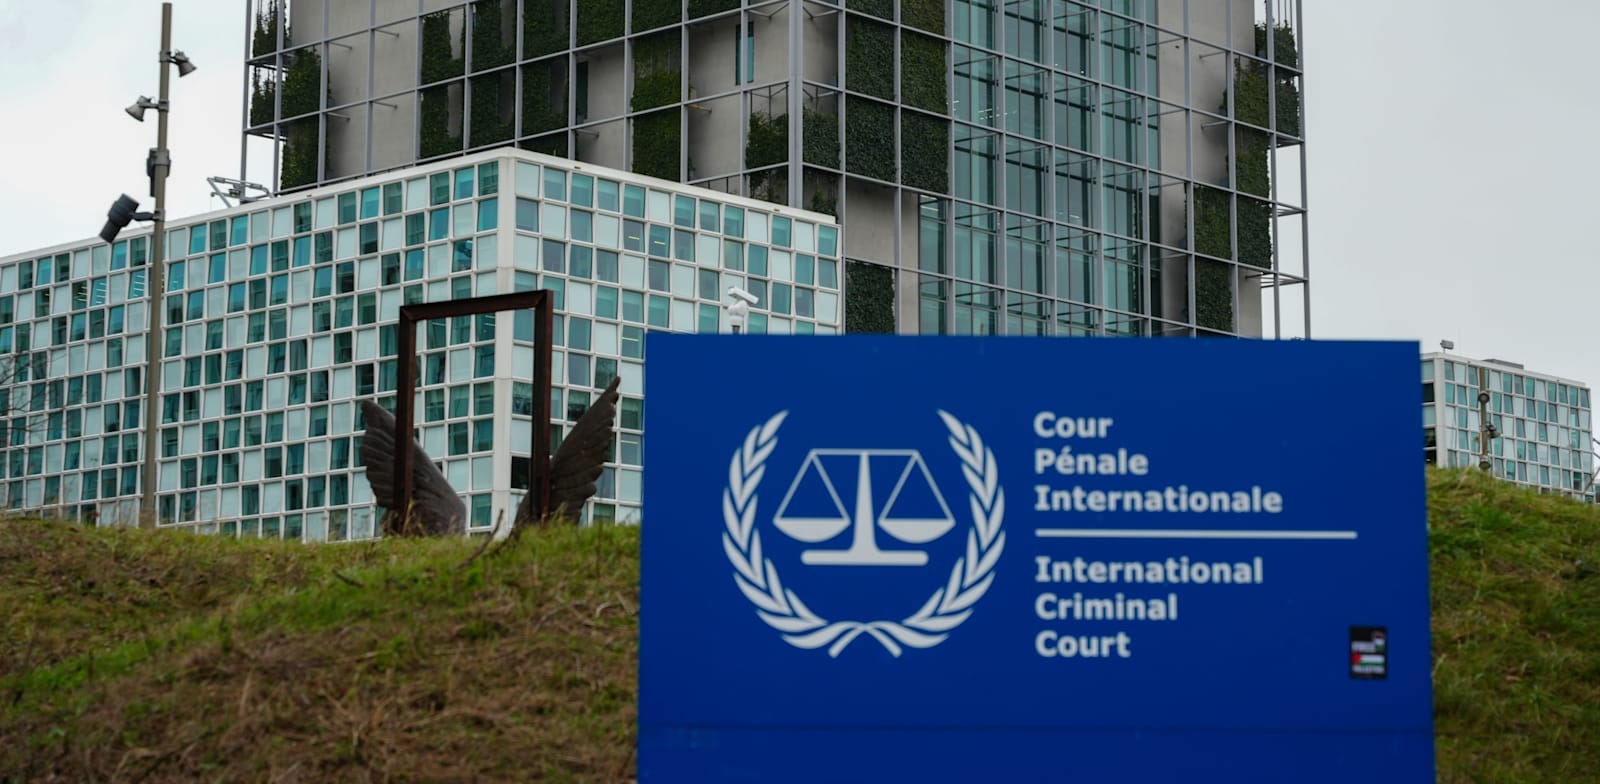 בית הדין הפלילי הבינלאומי בהאג / צילום: Shutterstock